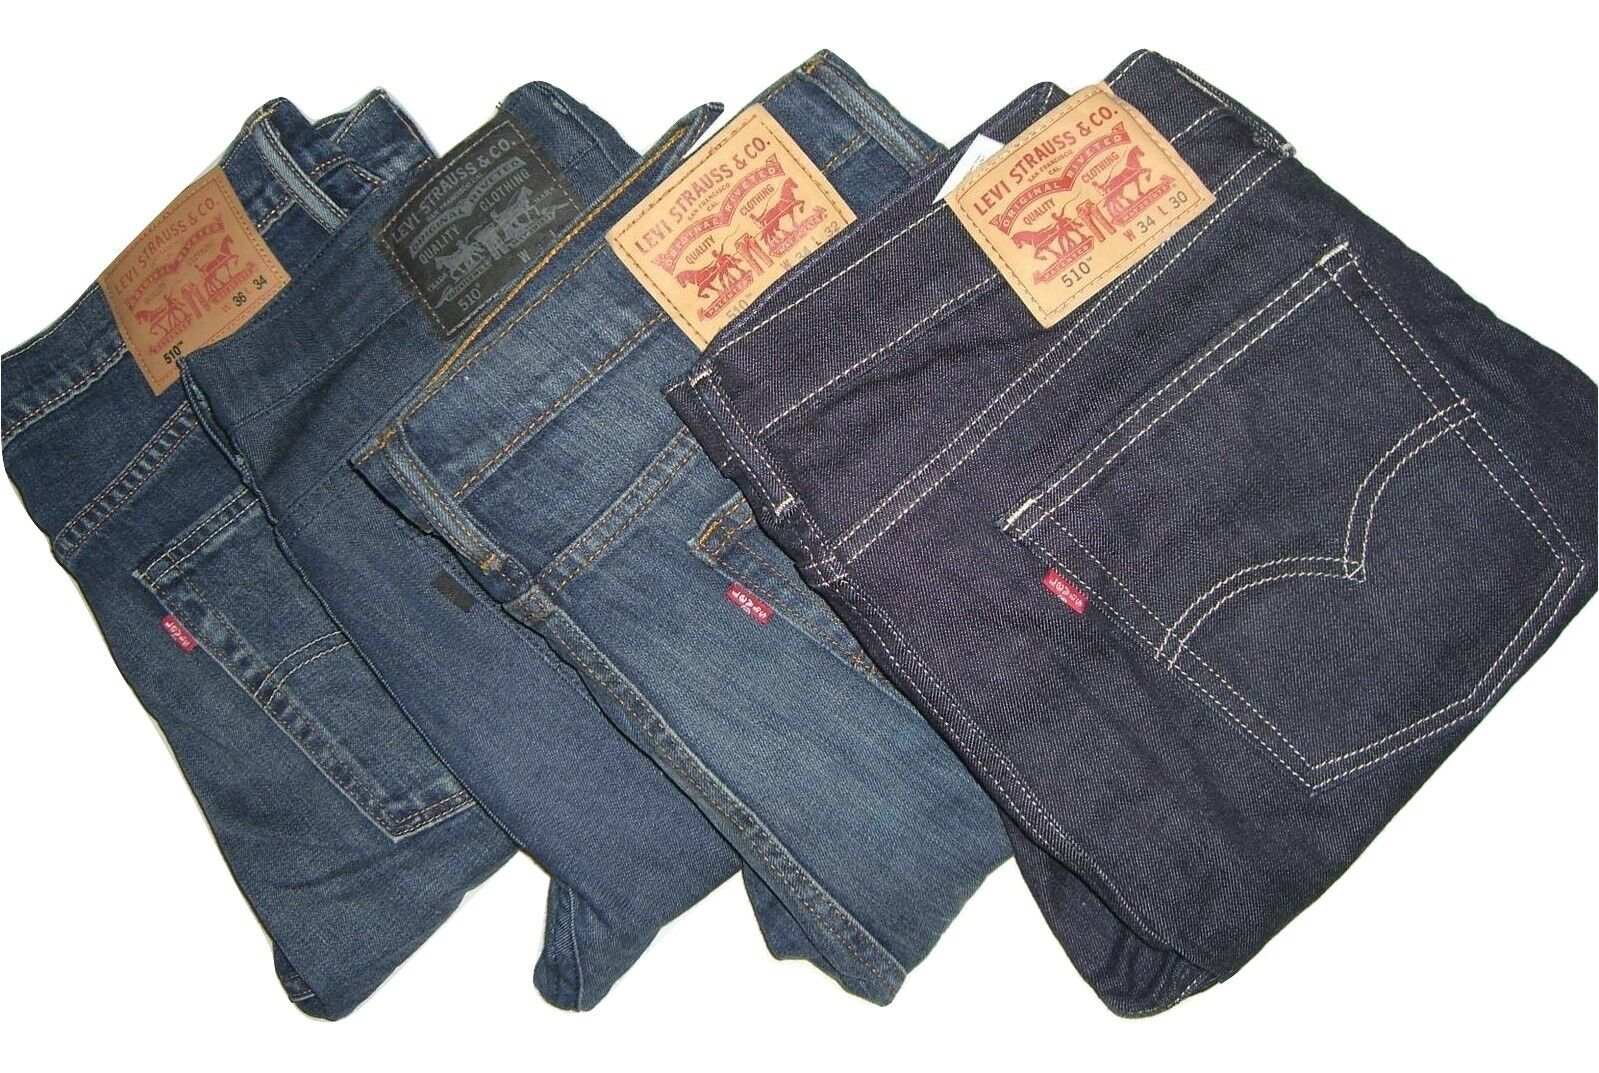 Levis New Free Shipping 510 men dark blue jeans skinny Max 64% OFF w32 fit w31 w36 w30 w33 w34